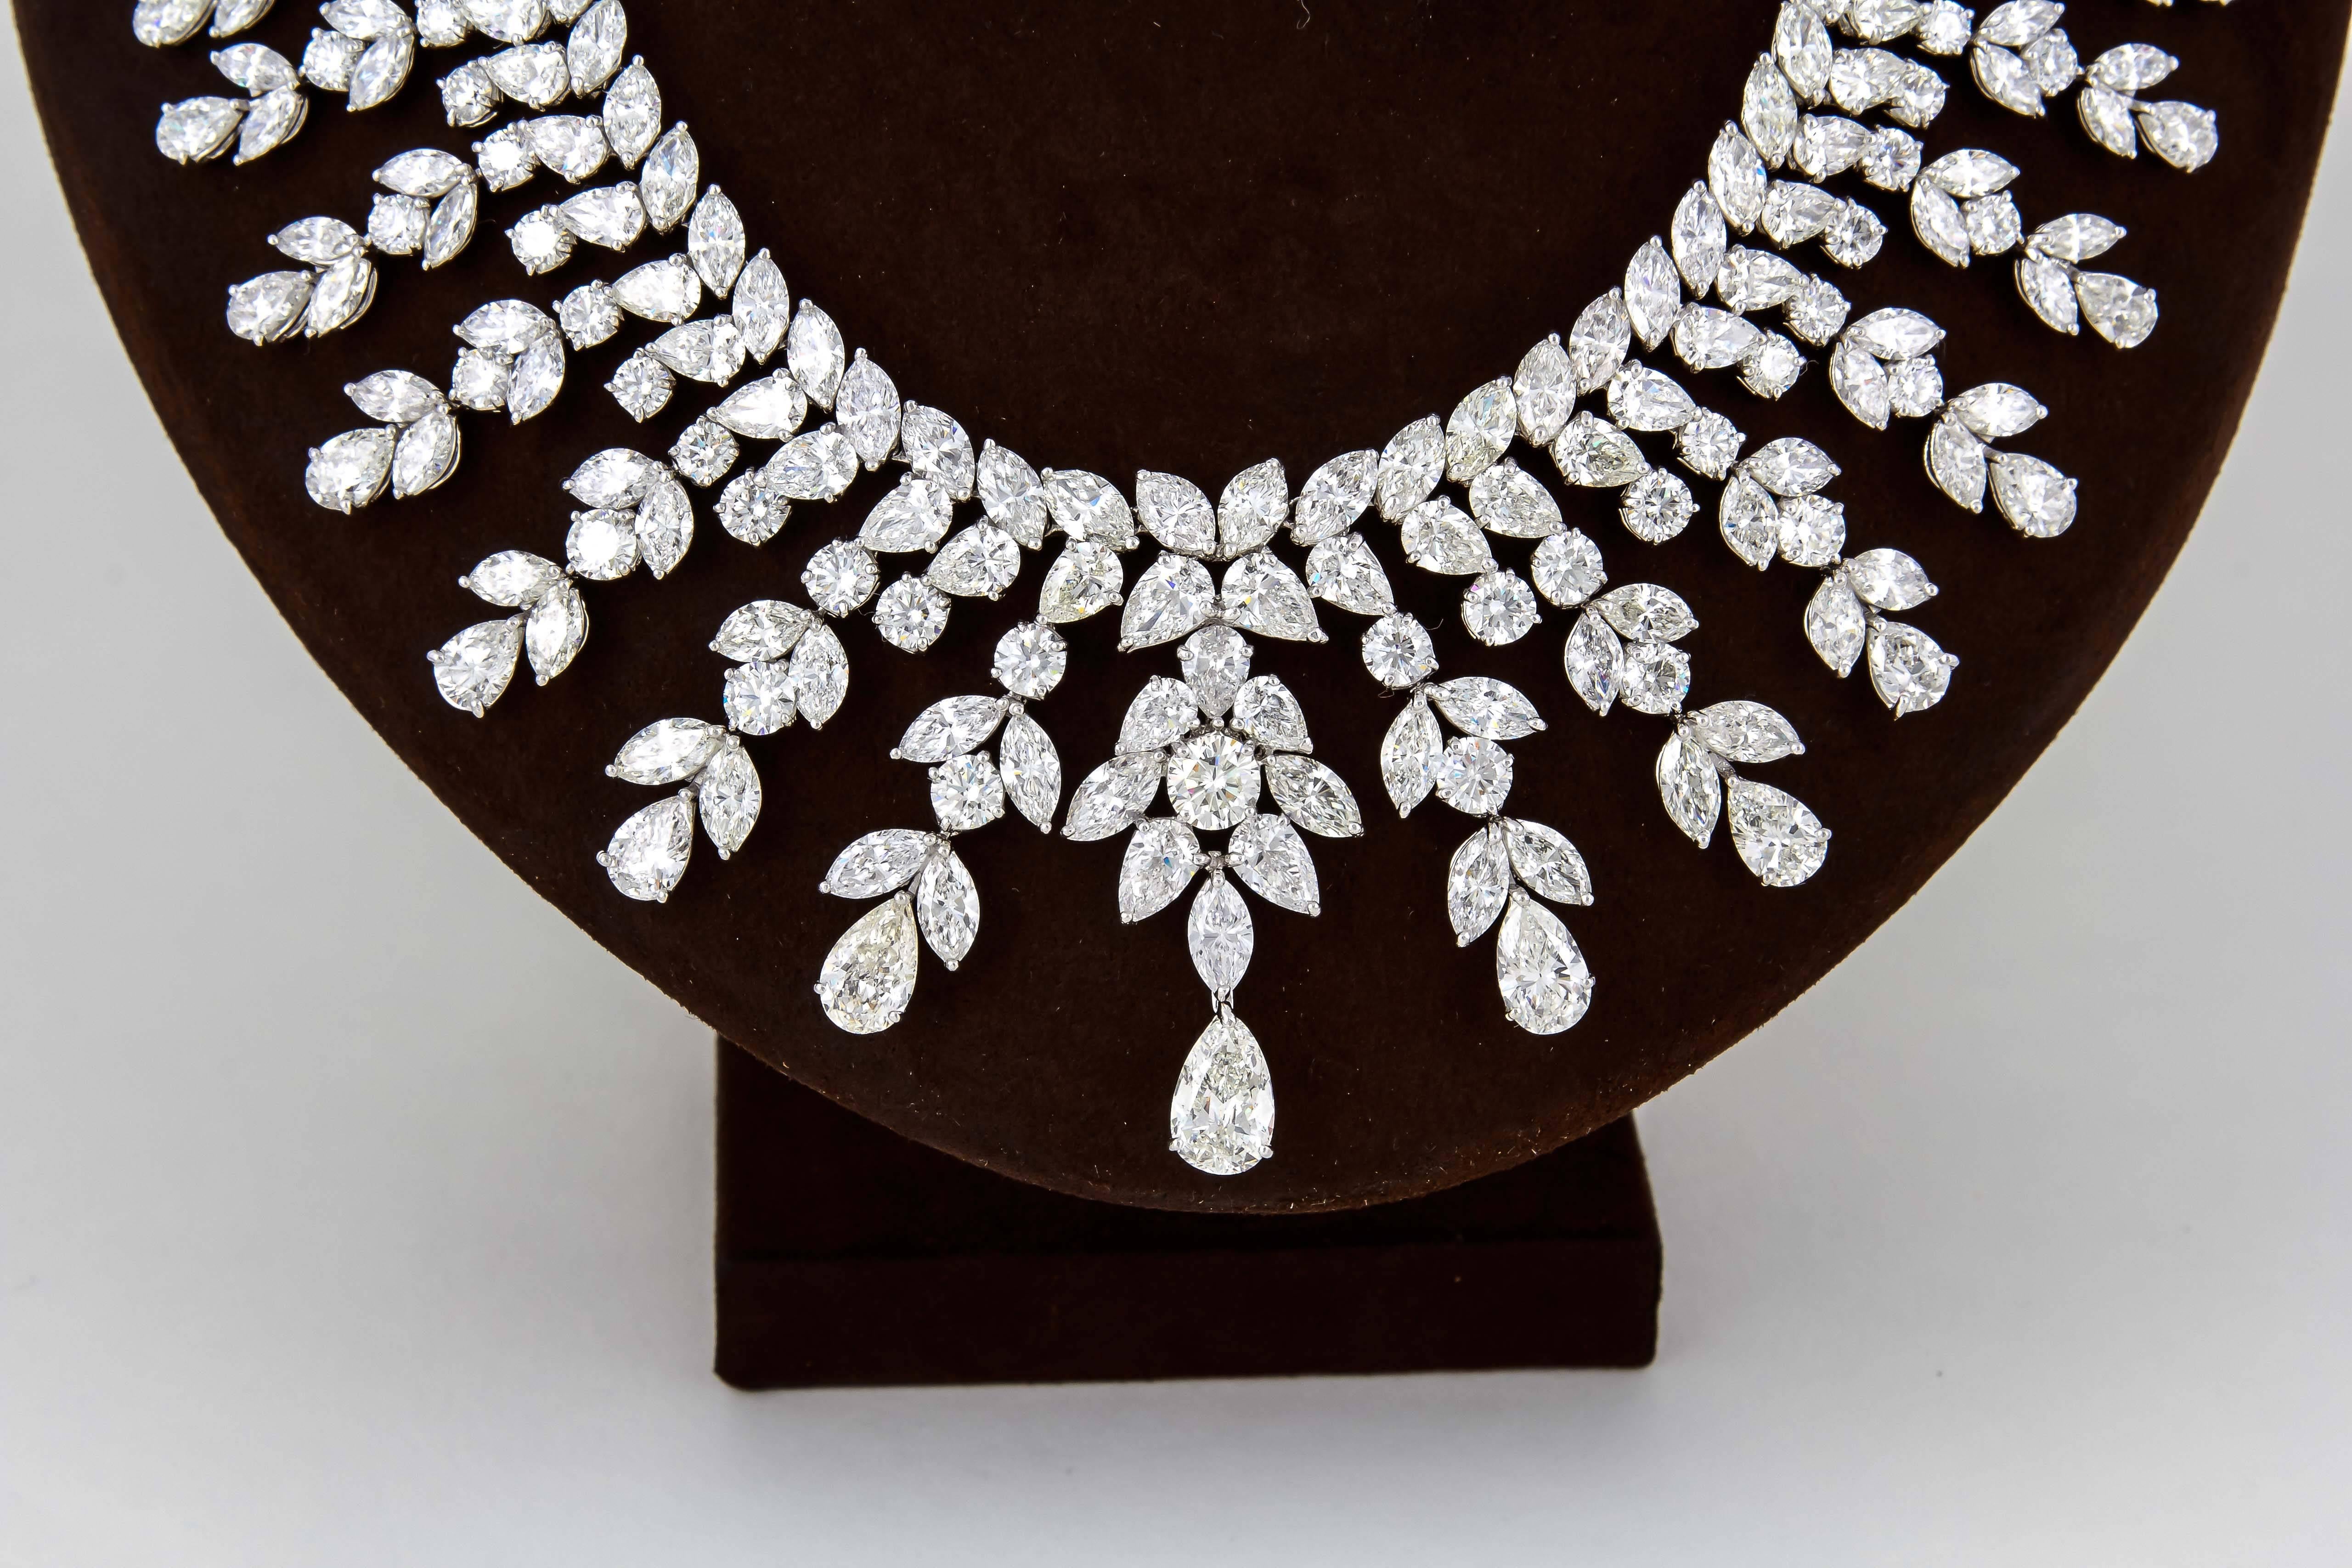 150 carat diamond chain